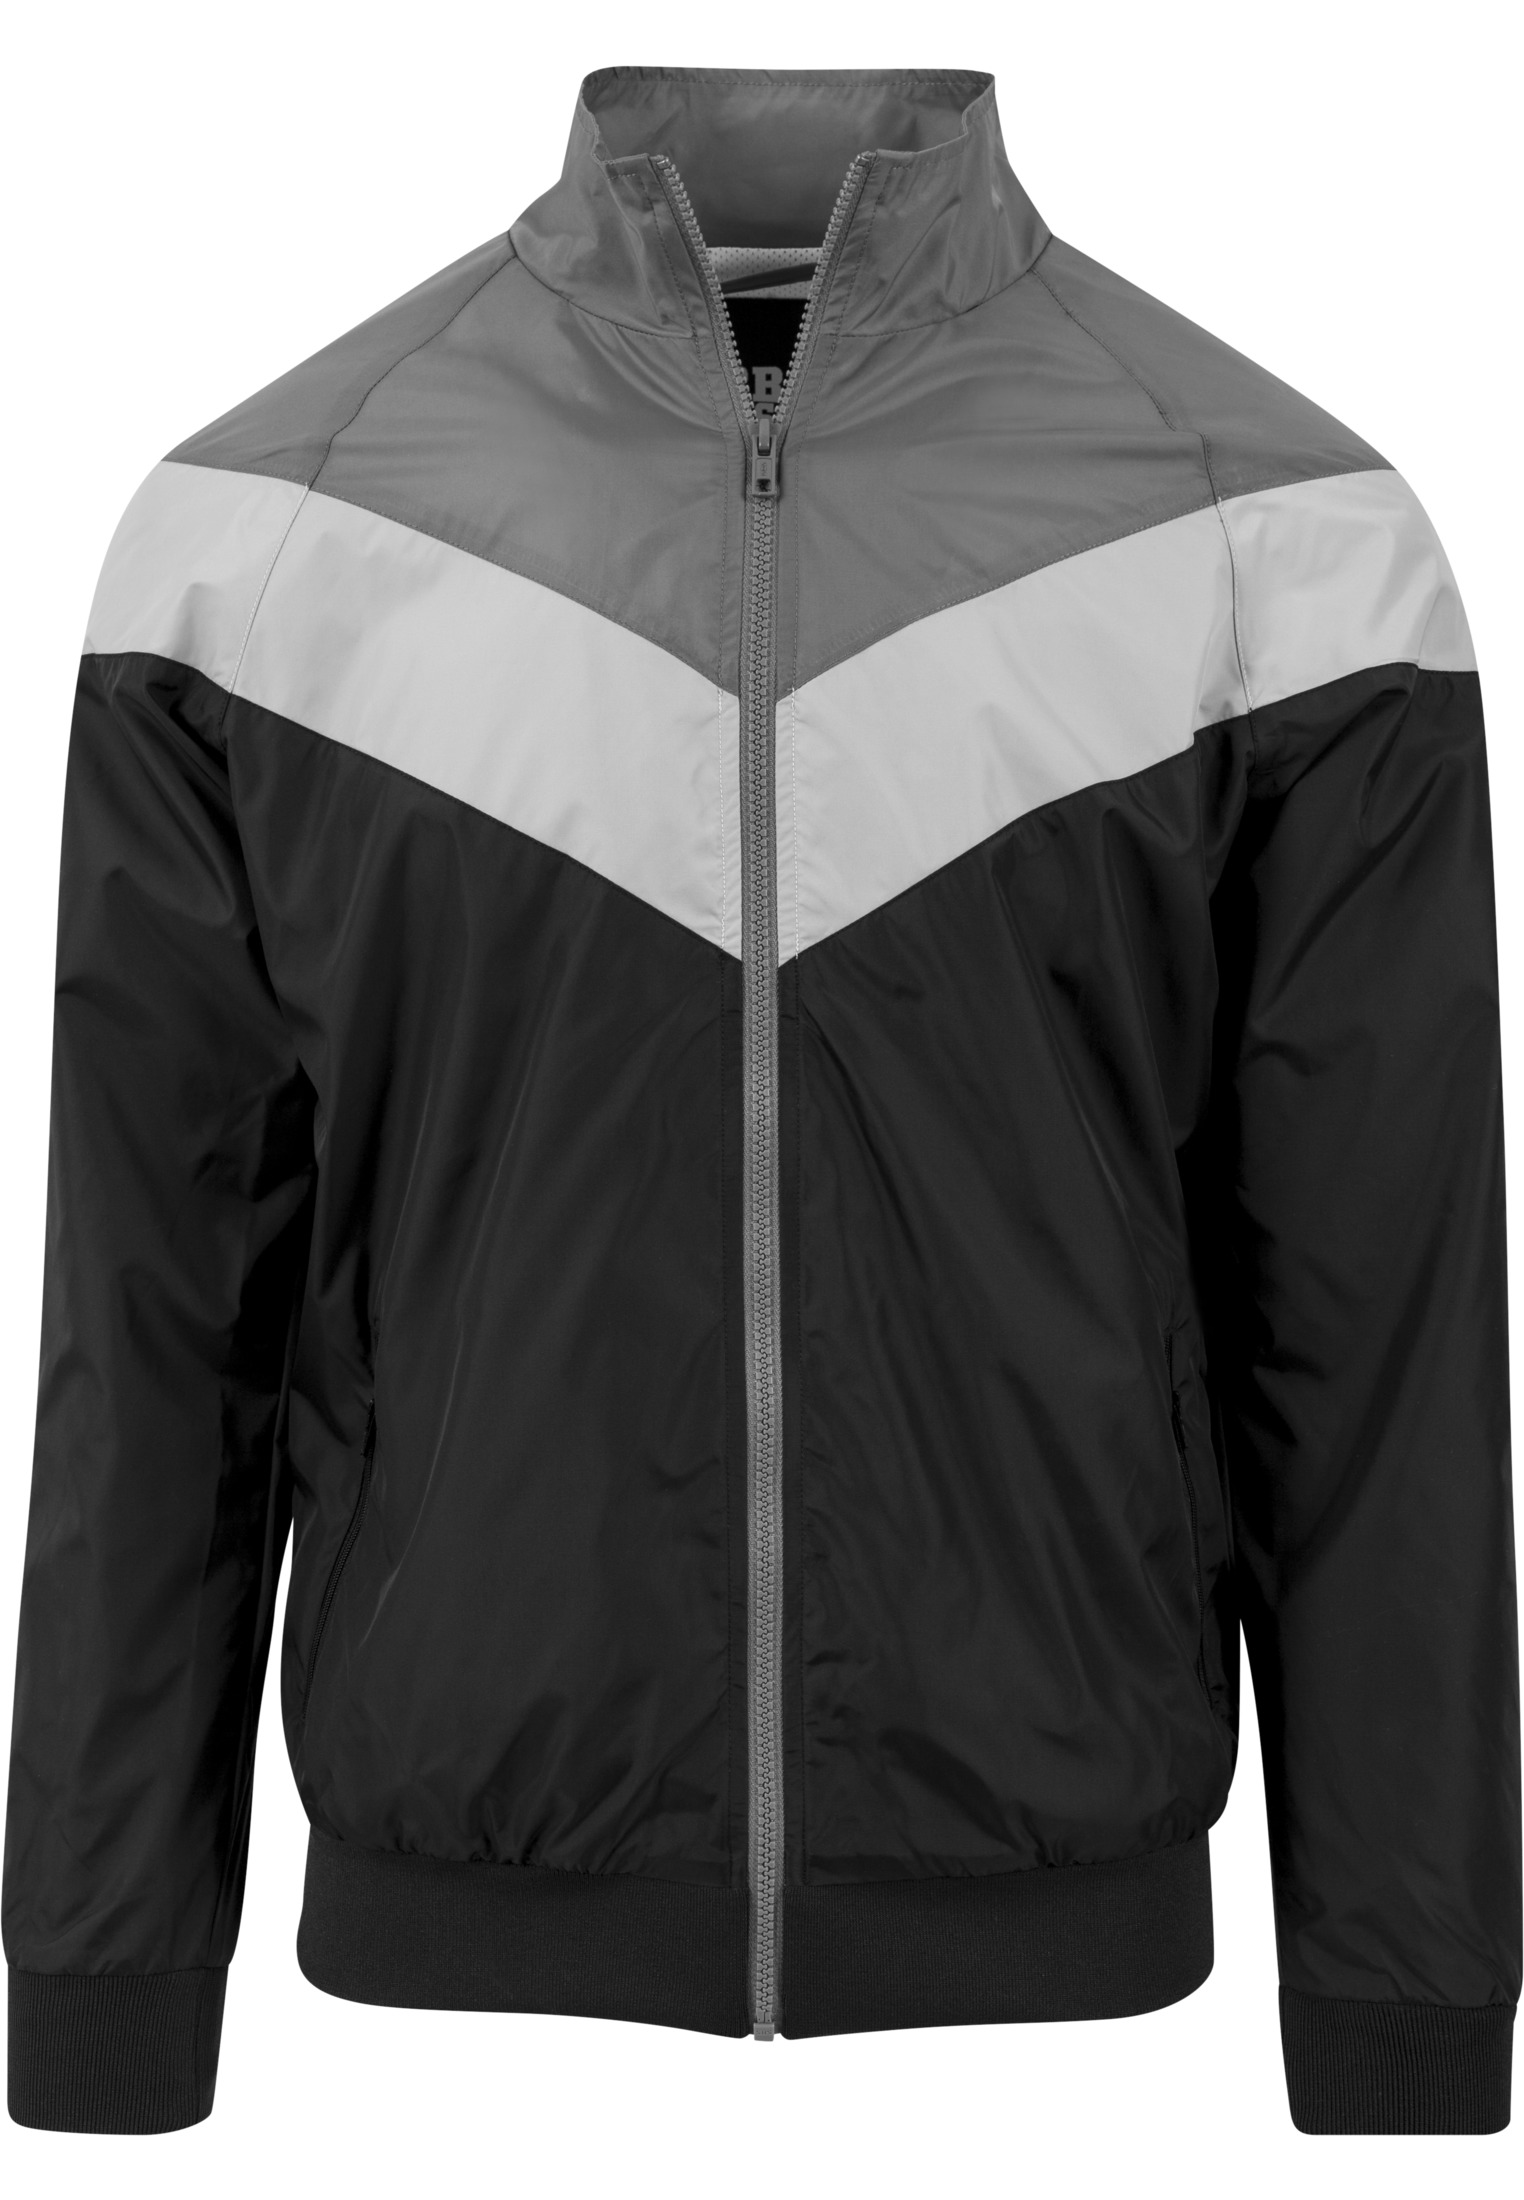 Leichte Jacken Arrow Zip Jacket in Farbe blk/darkgrey/lightgrey